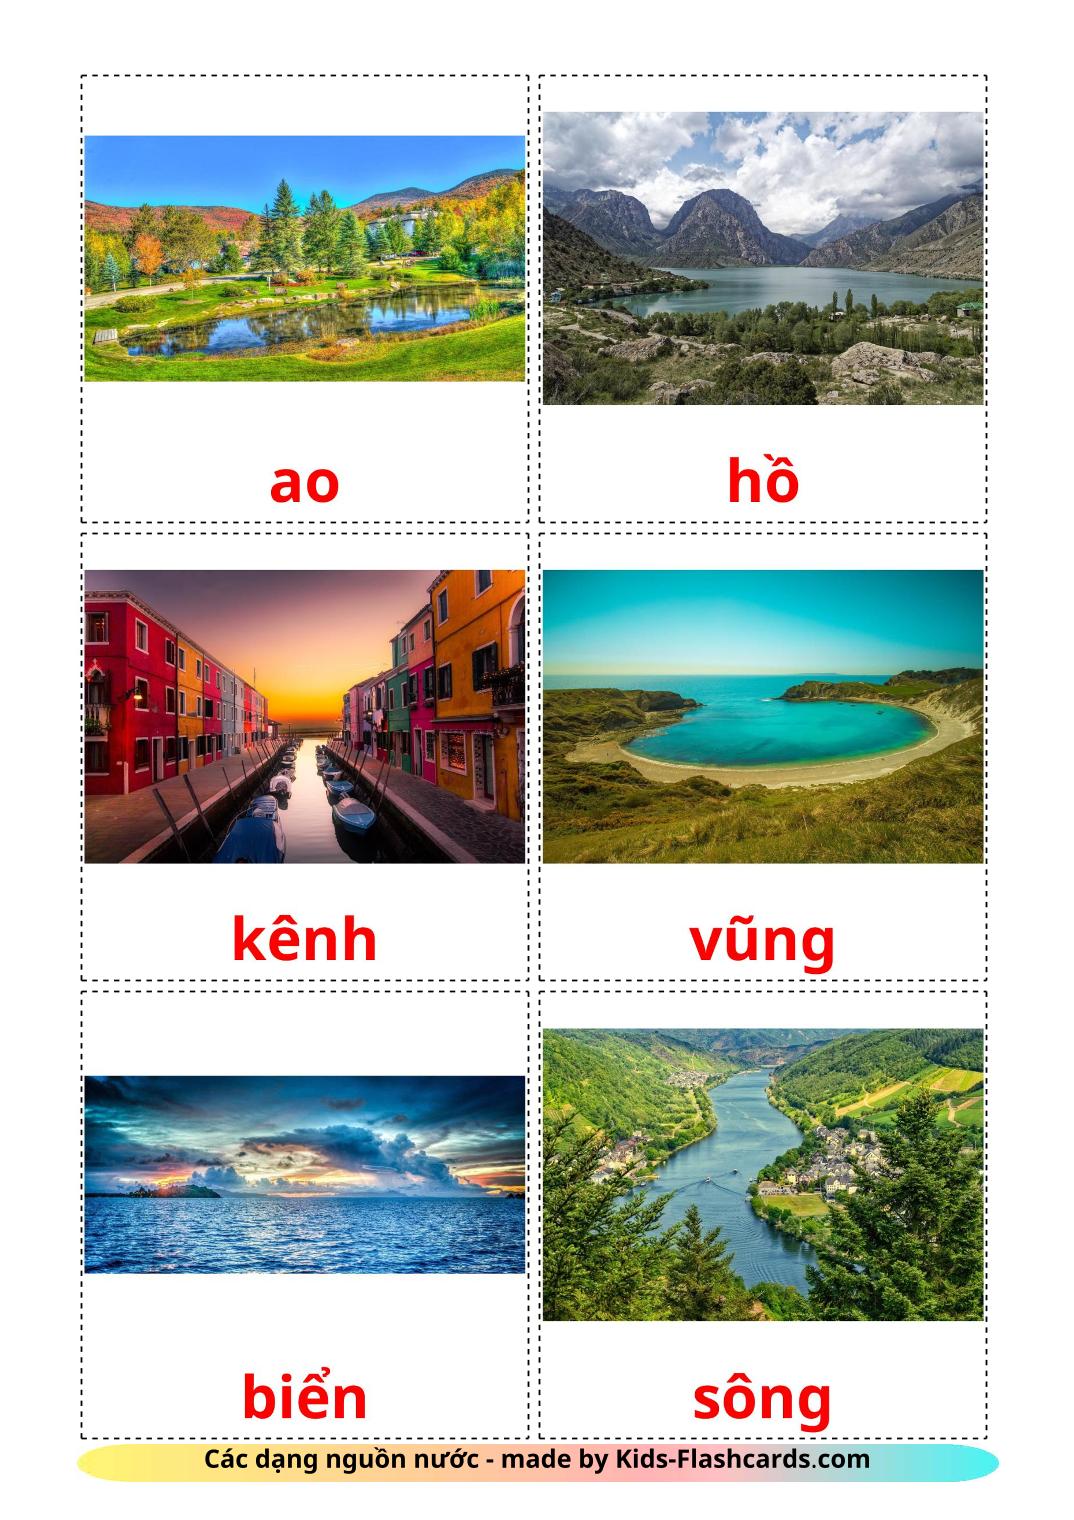 Corpos de água - 30 Flashcards vietnamitaes gratuitos para impressão